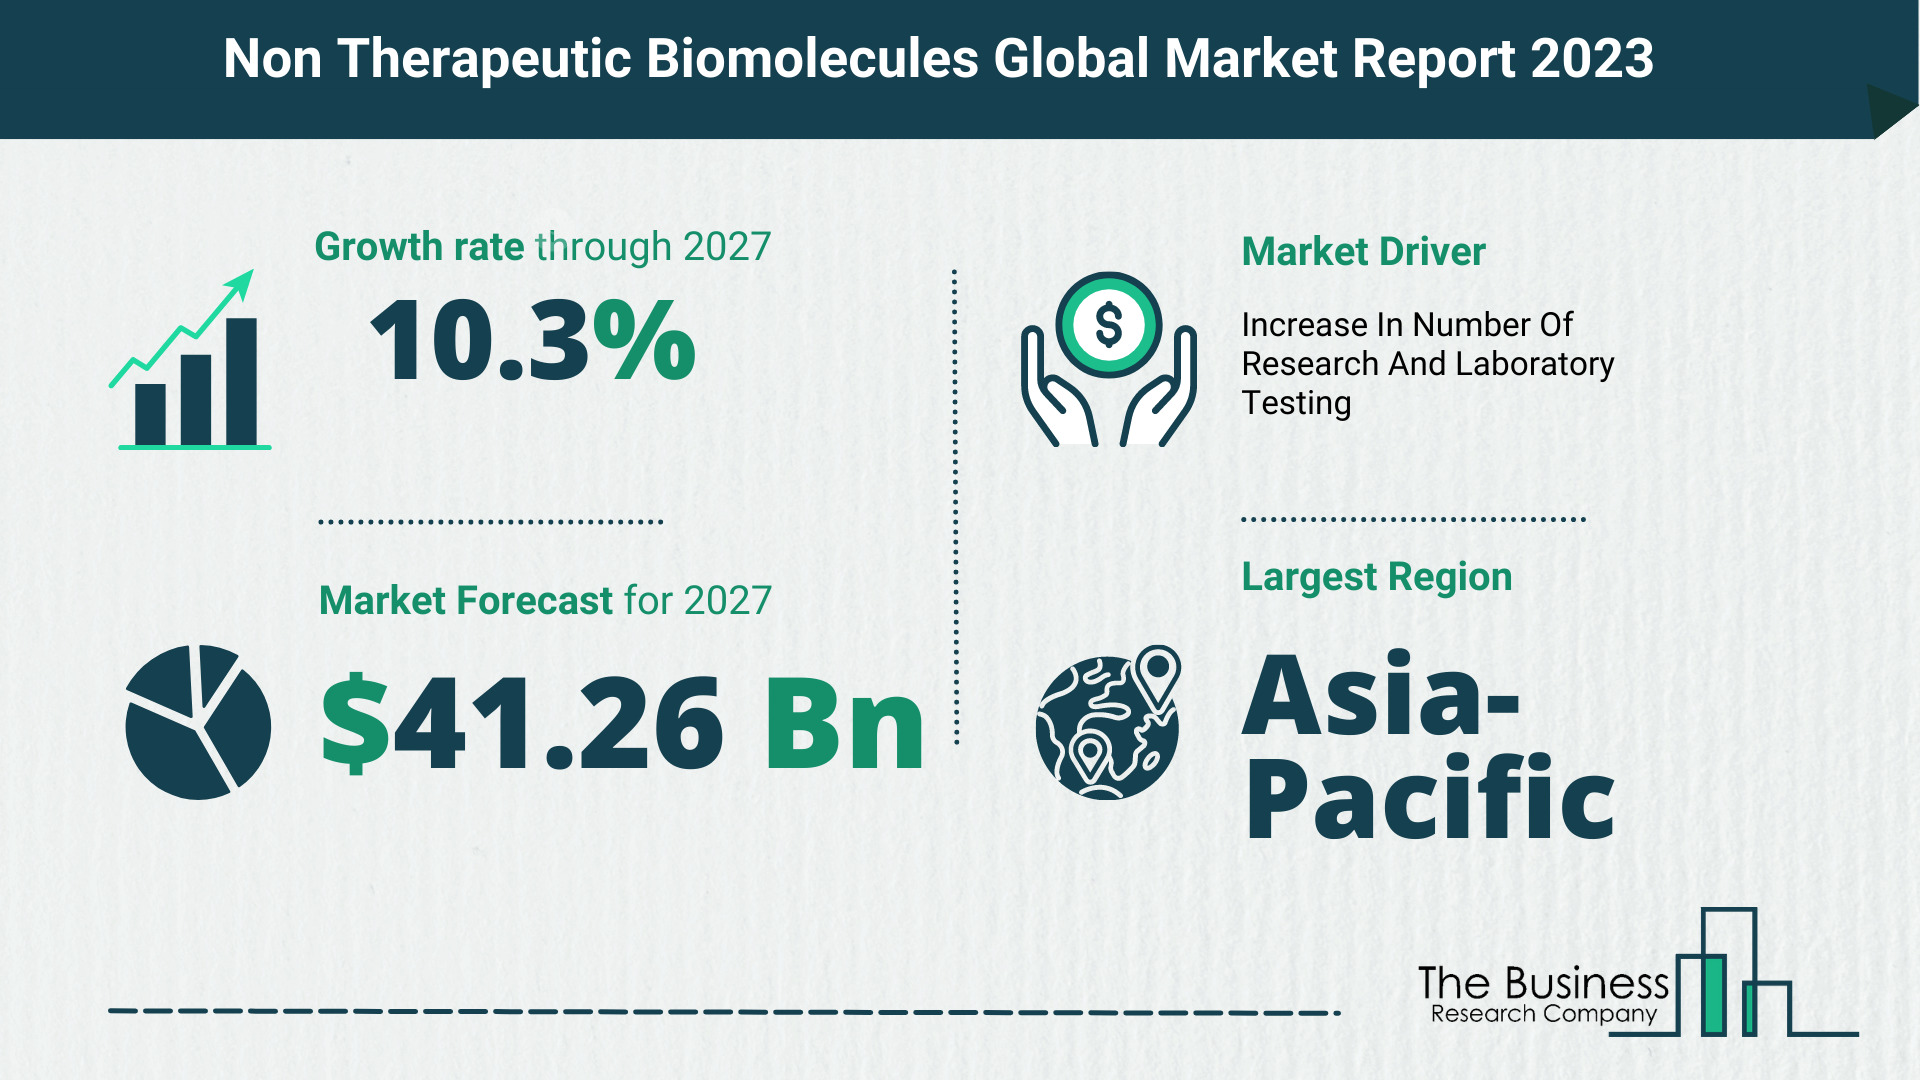 Global Non Therapeutic Biomolecules Market